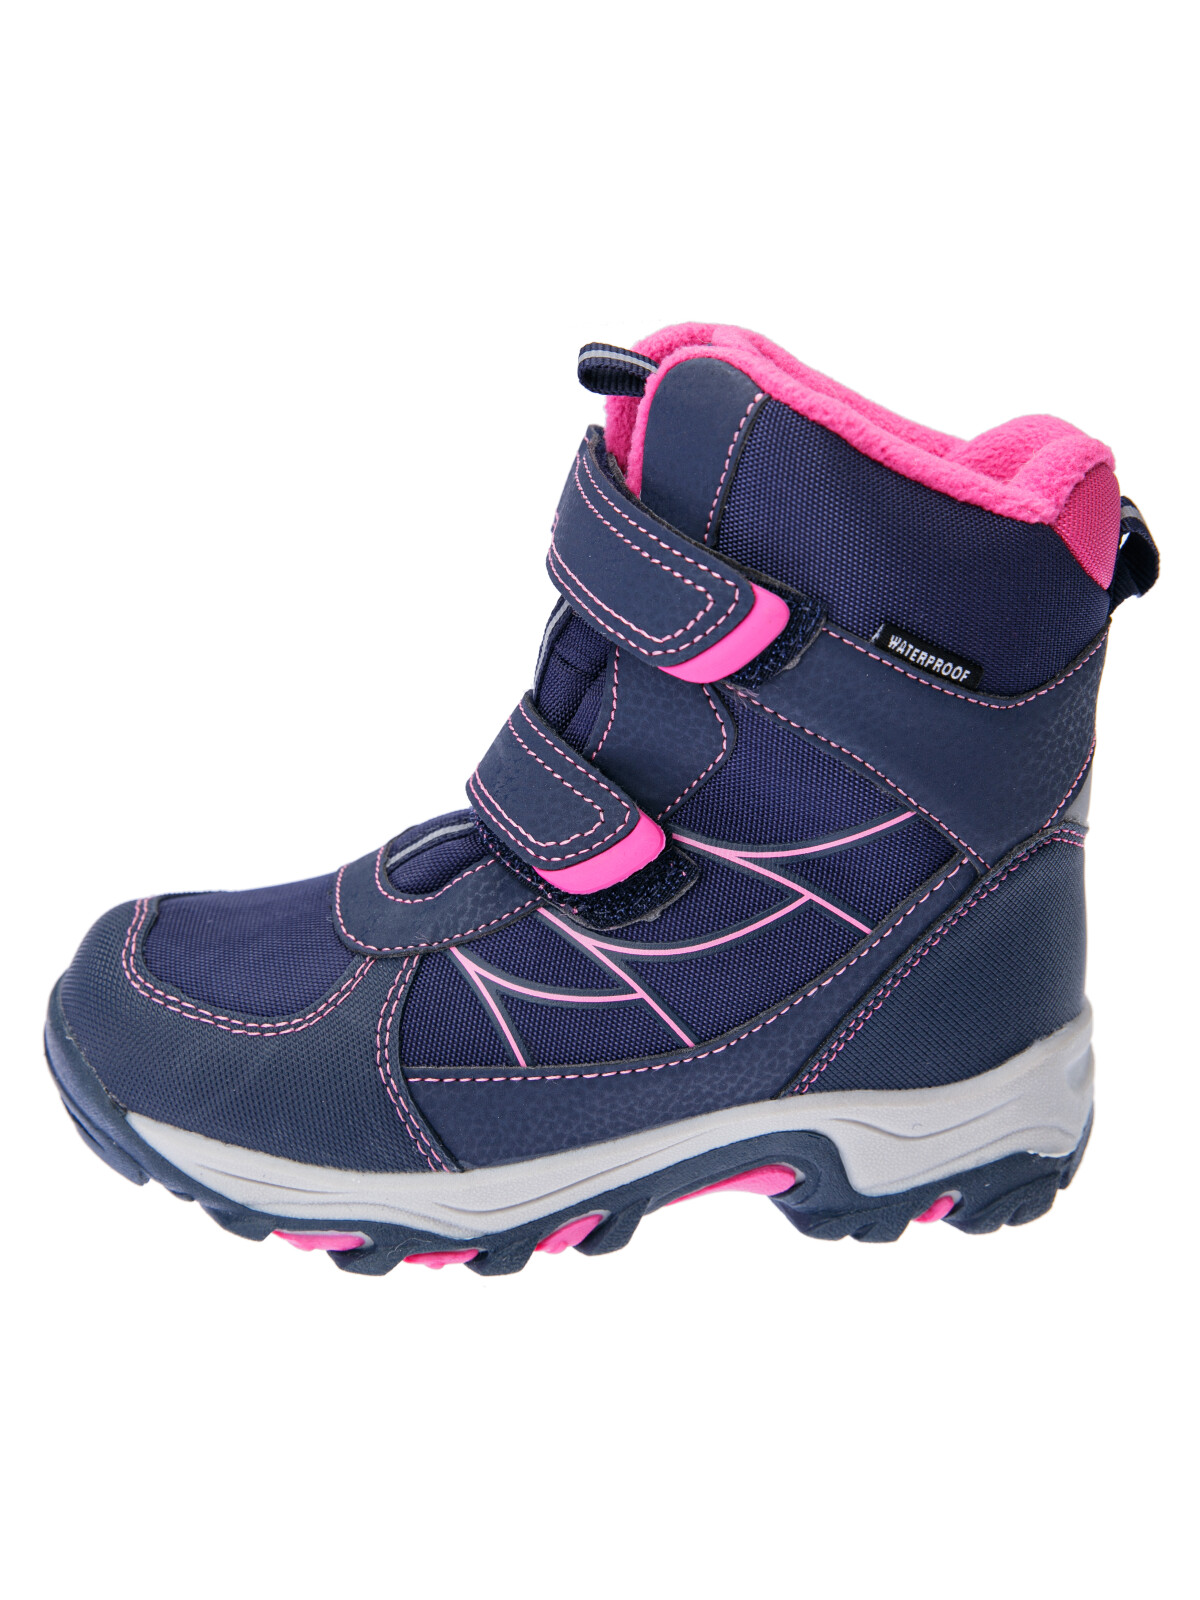 Зимние мембранные ботинки для девочки PlayToday, тёмно-синий,фуксия, 27